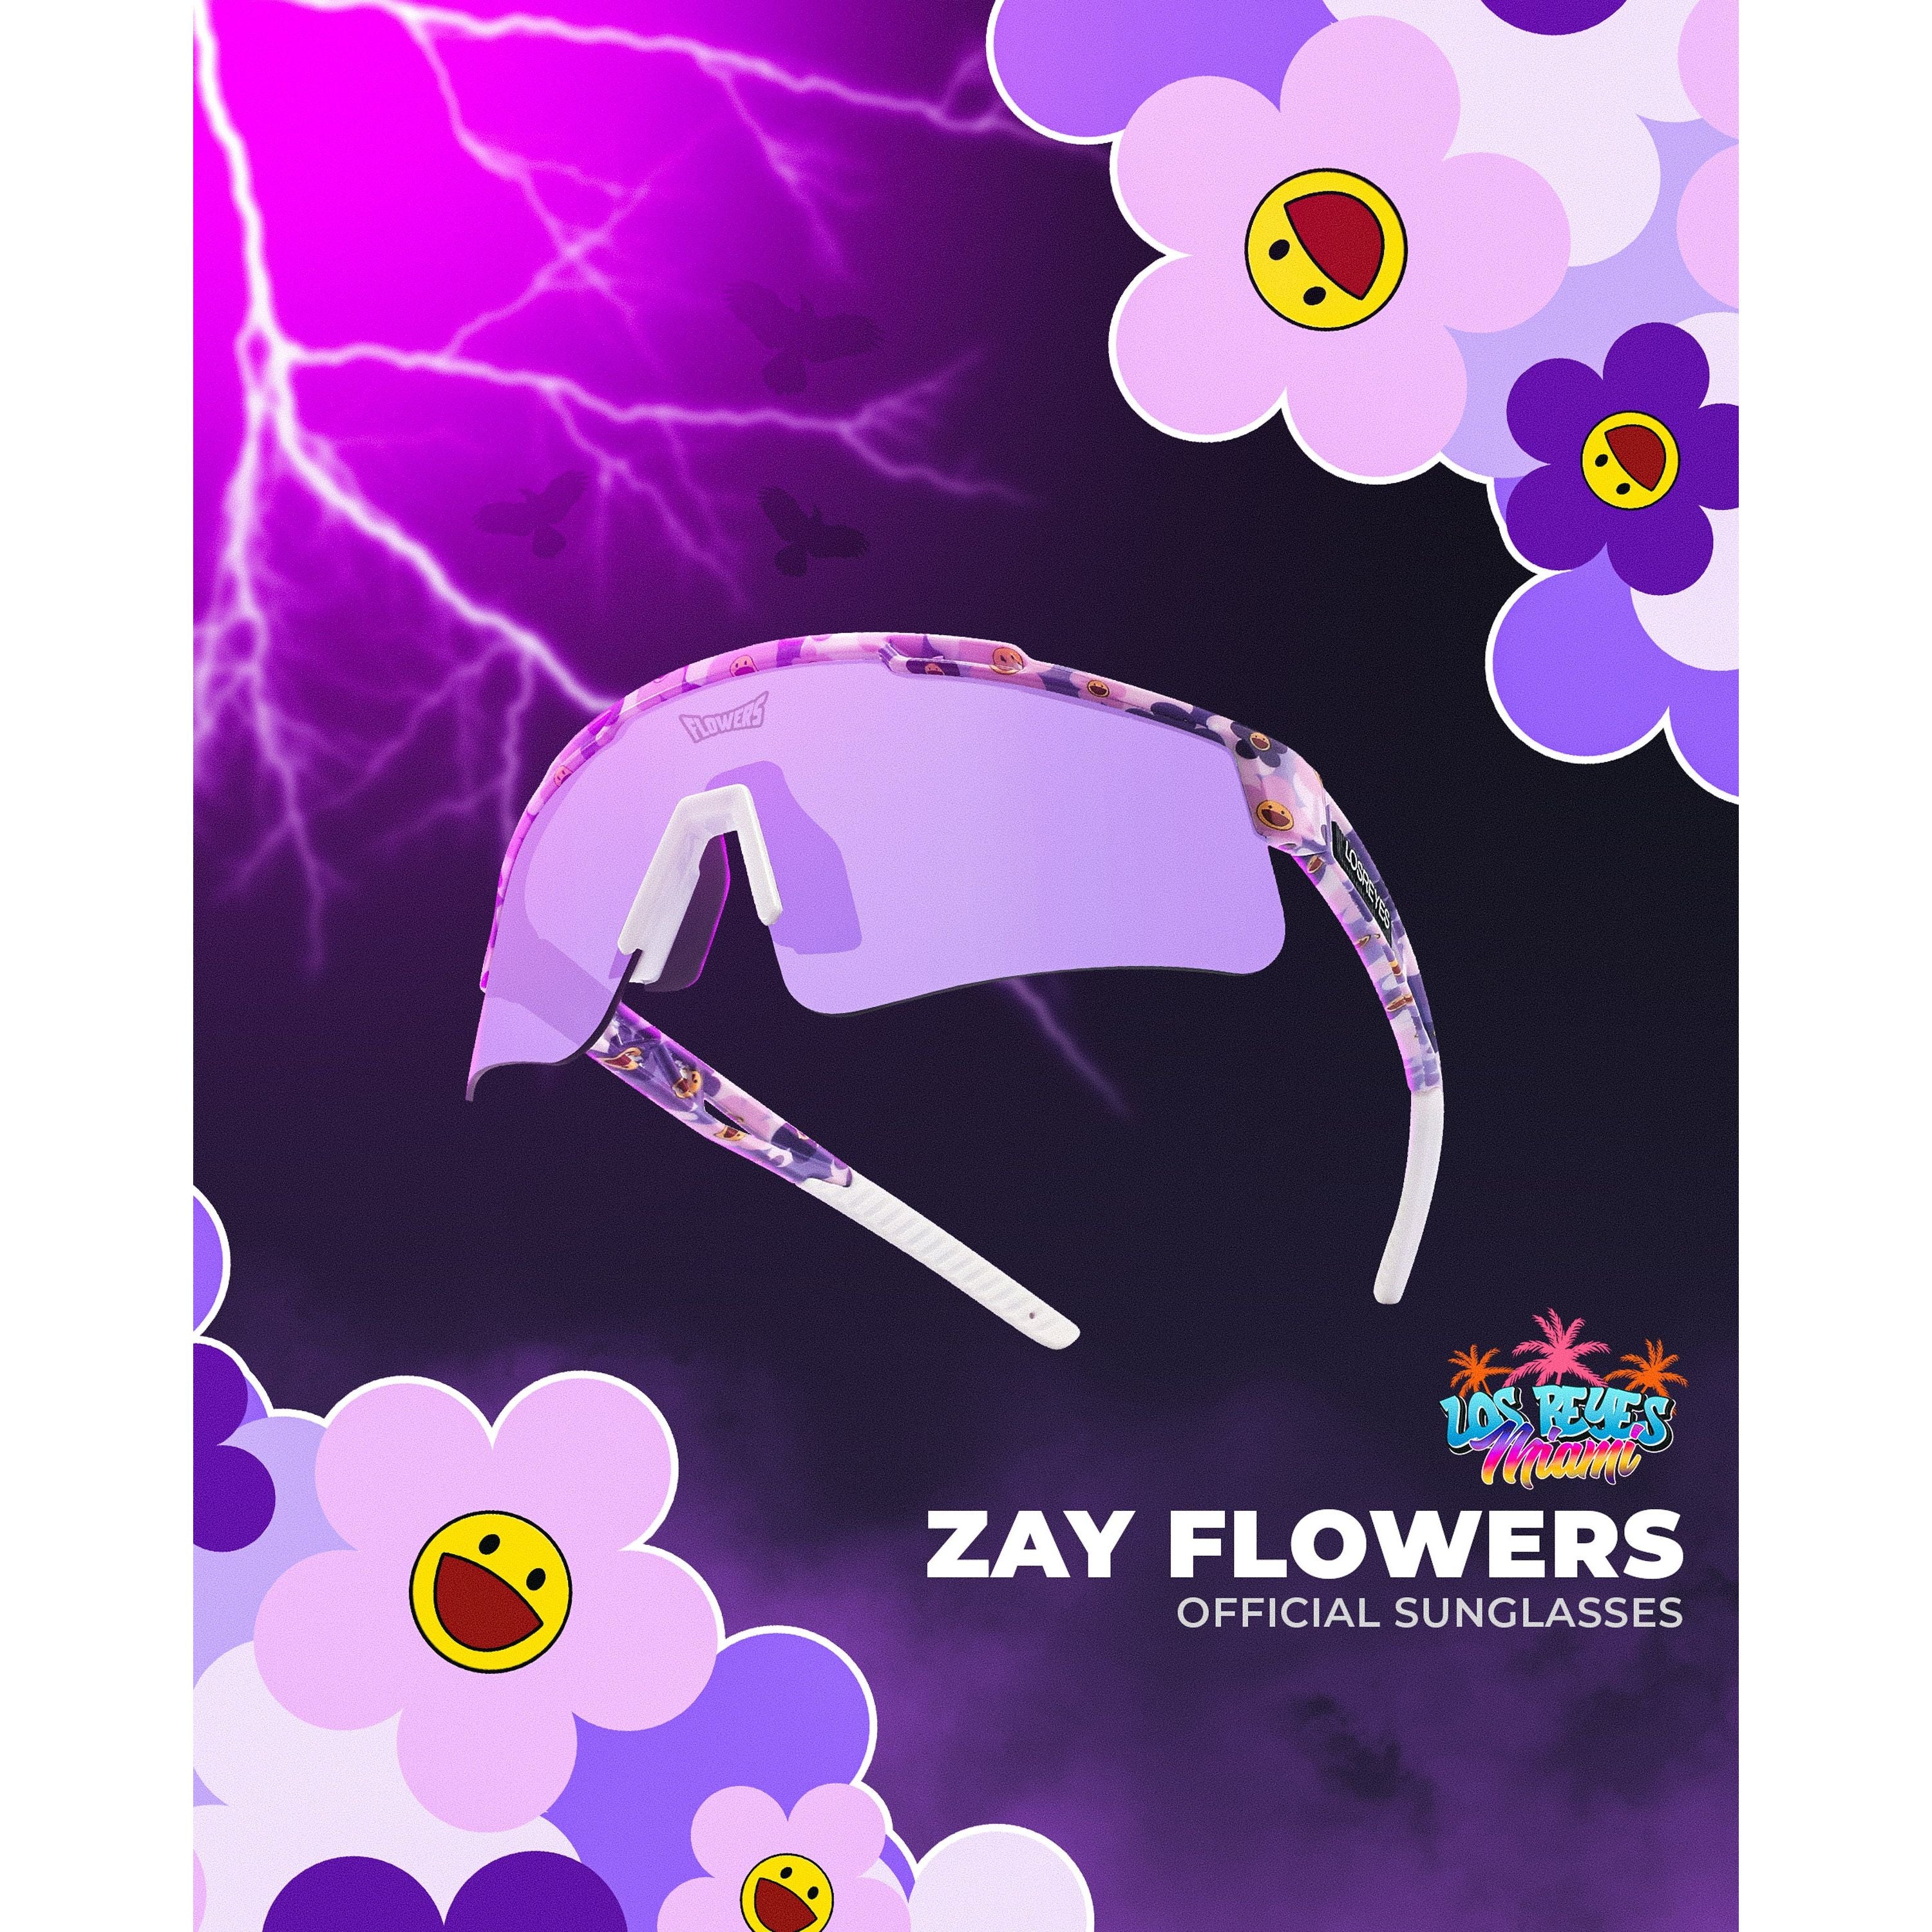 ZAY "FLOWERS" SHADES